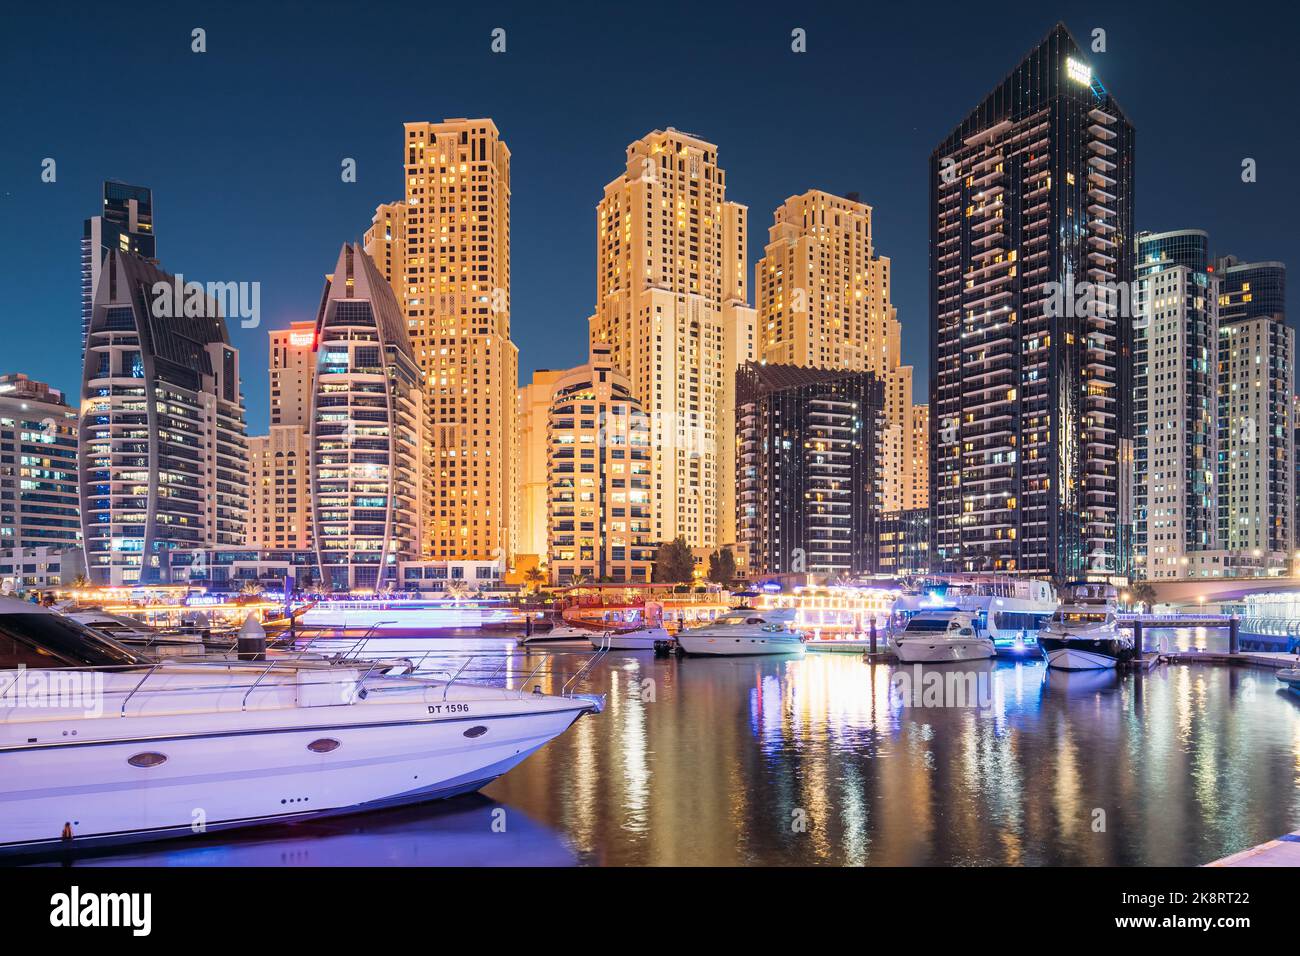 Puerto deportivo de Dubai, EAU, Emiratos Árabes Unidos - 19 de mayo de 2021: Embarcadero con muchos yates amarrados en la noche de iluminación. Vista nocturna del puerto deportivo de Dubai Foto de stock